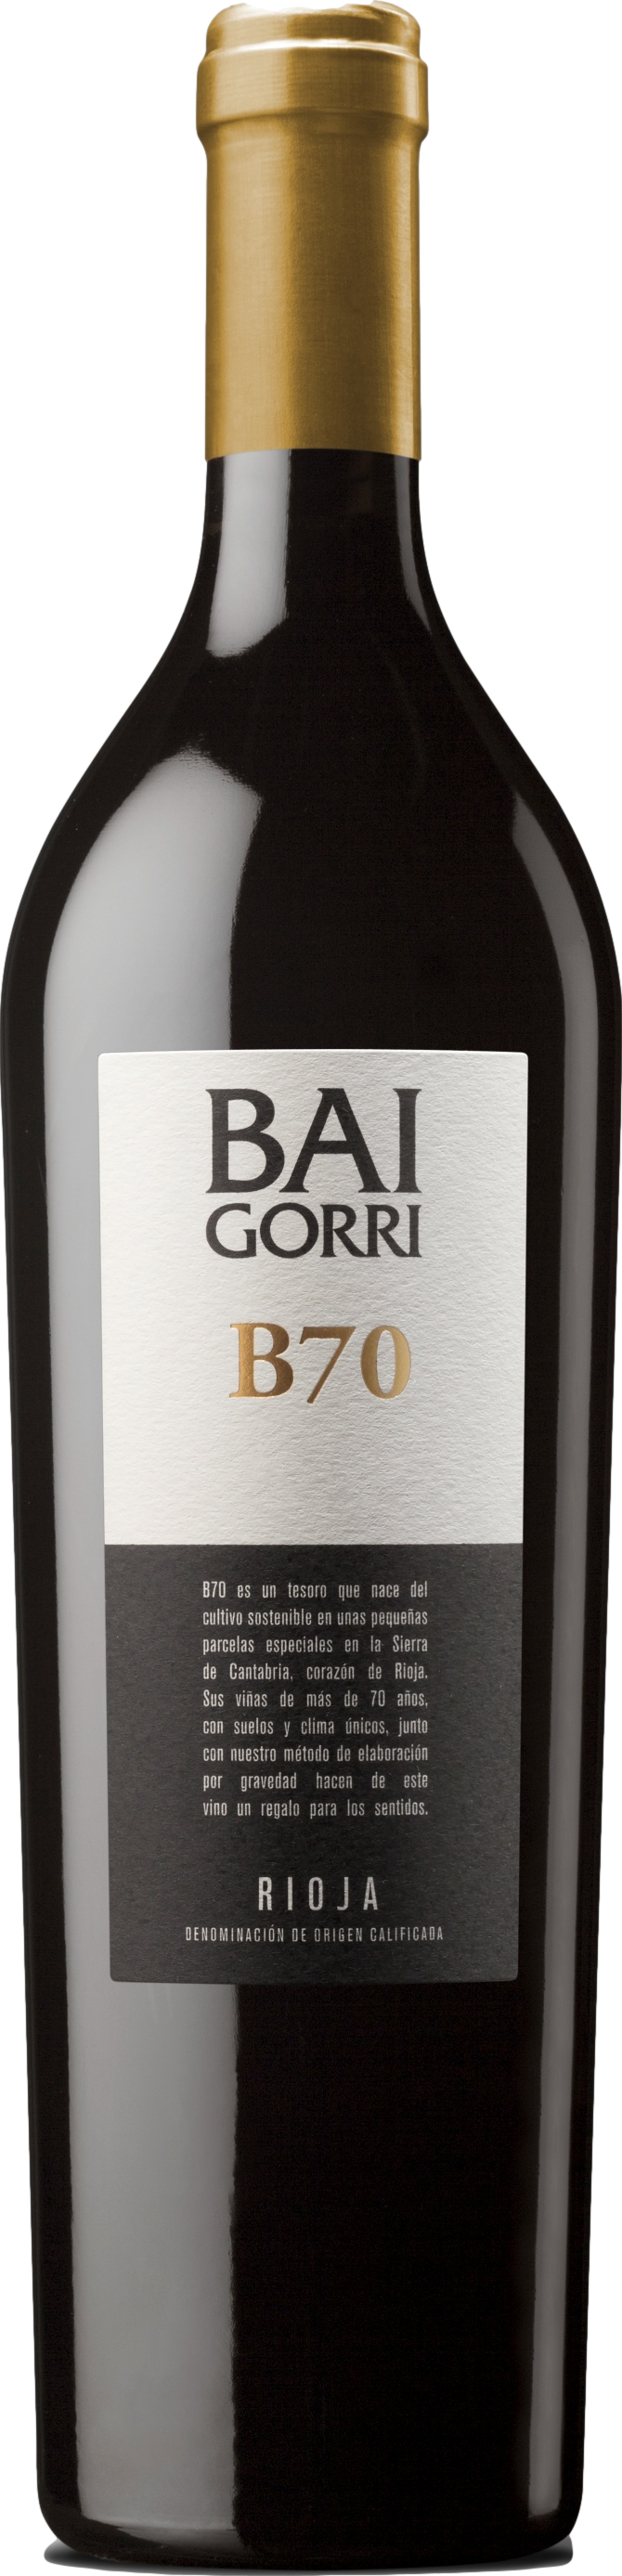 Product image of Baigorri Rioja B70 2019 from 8wines